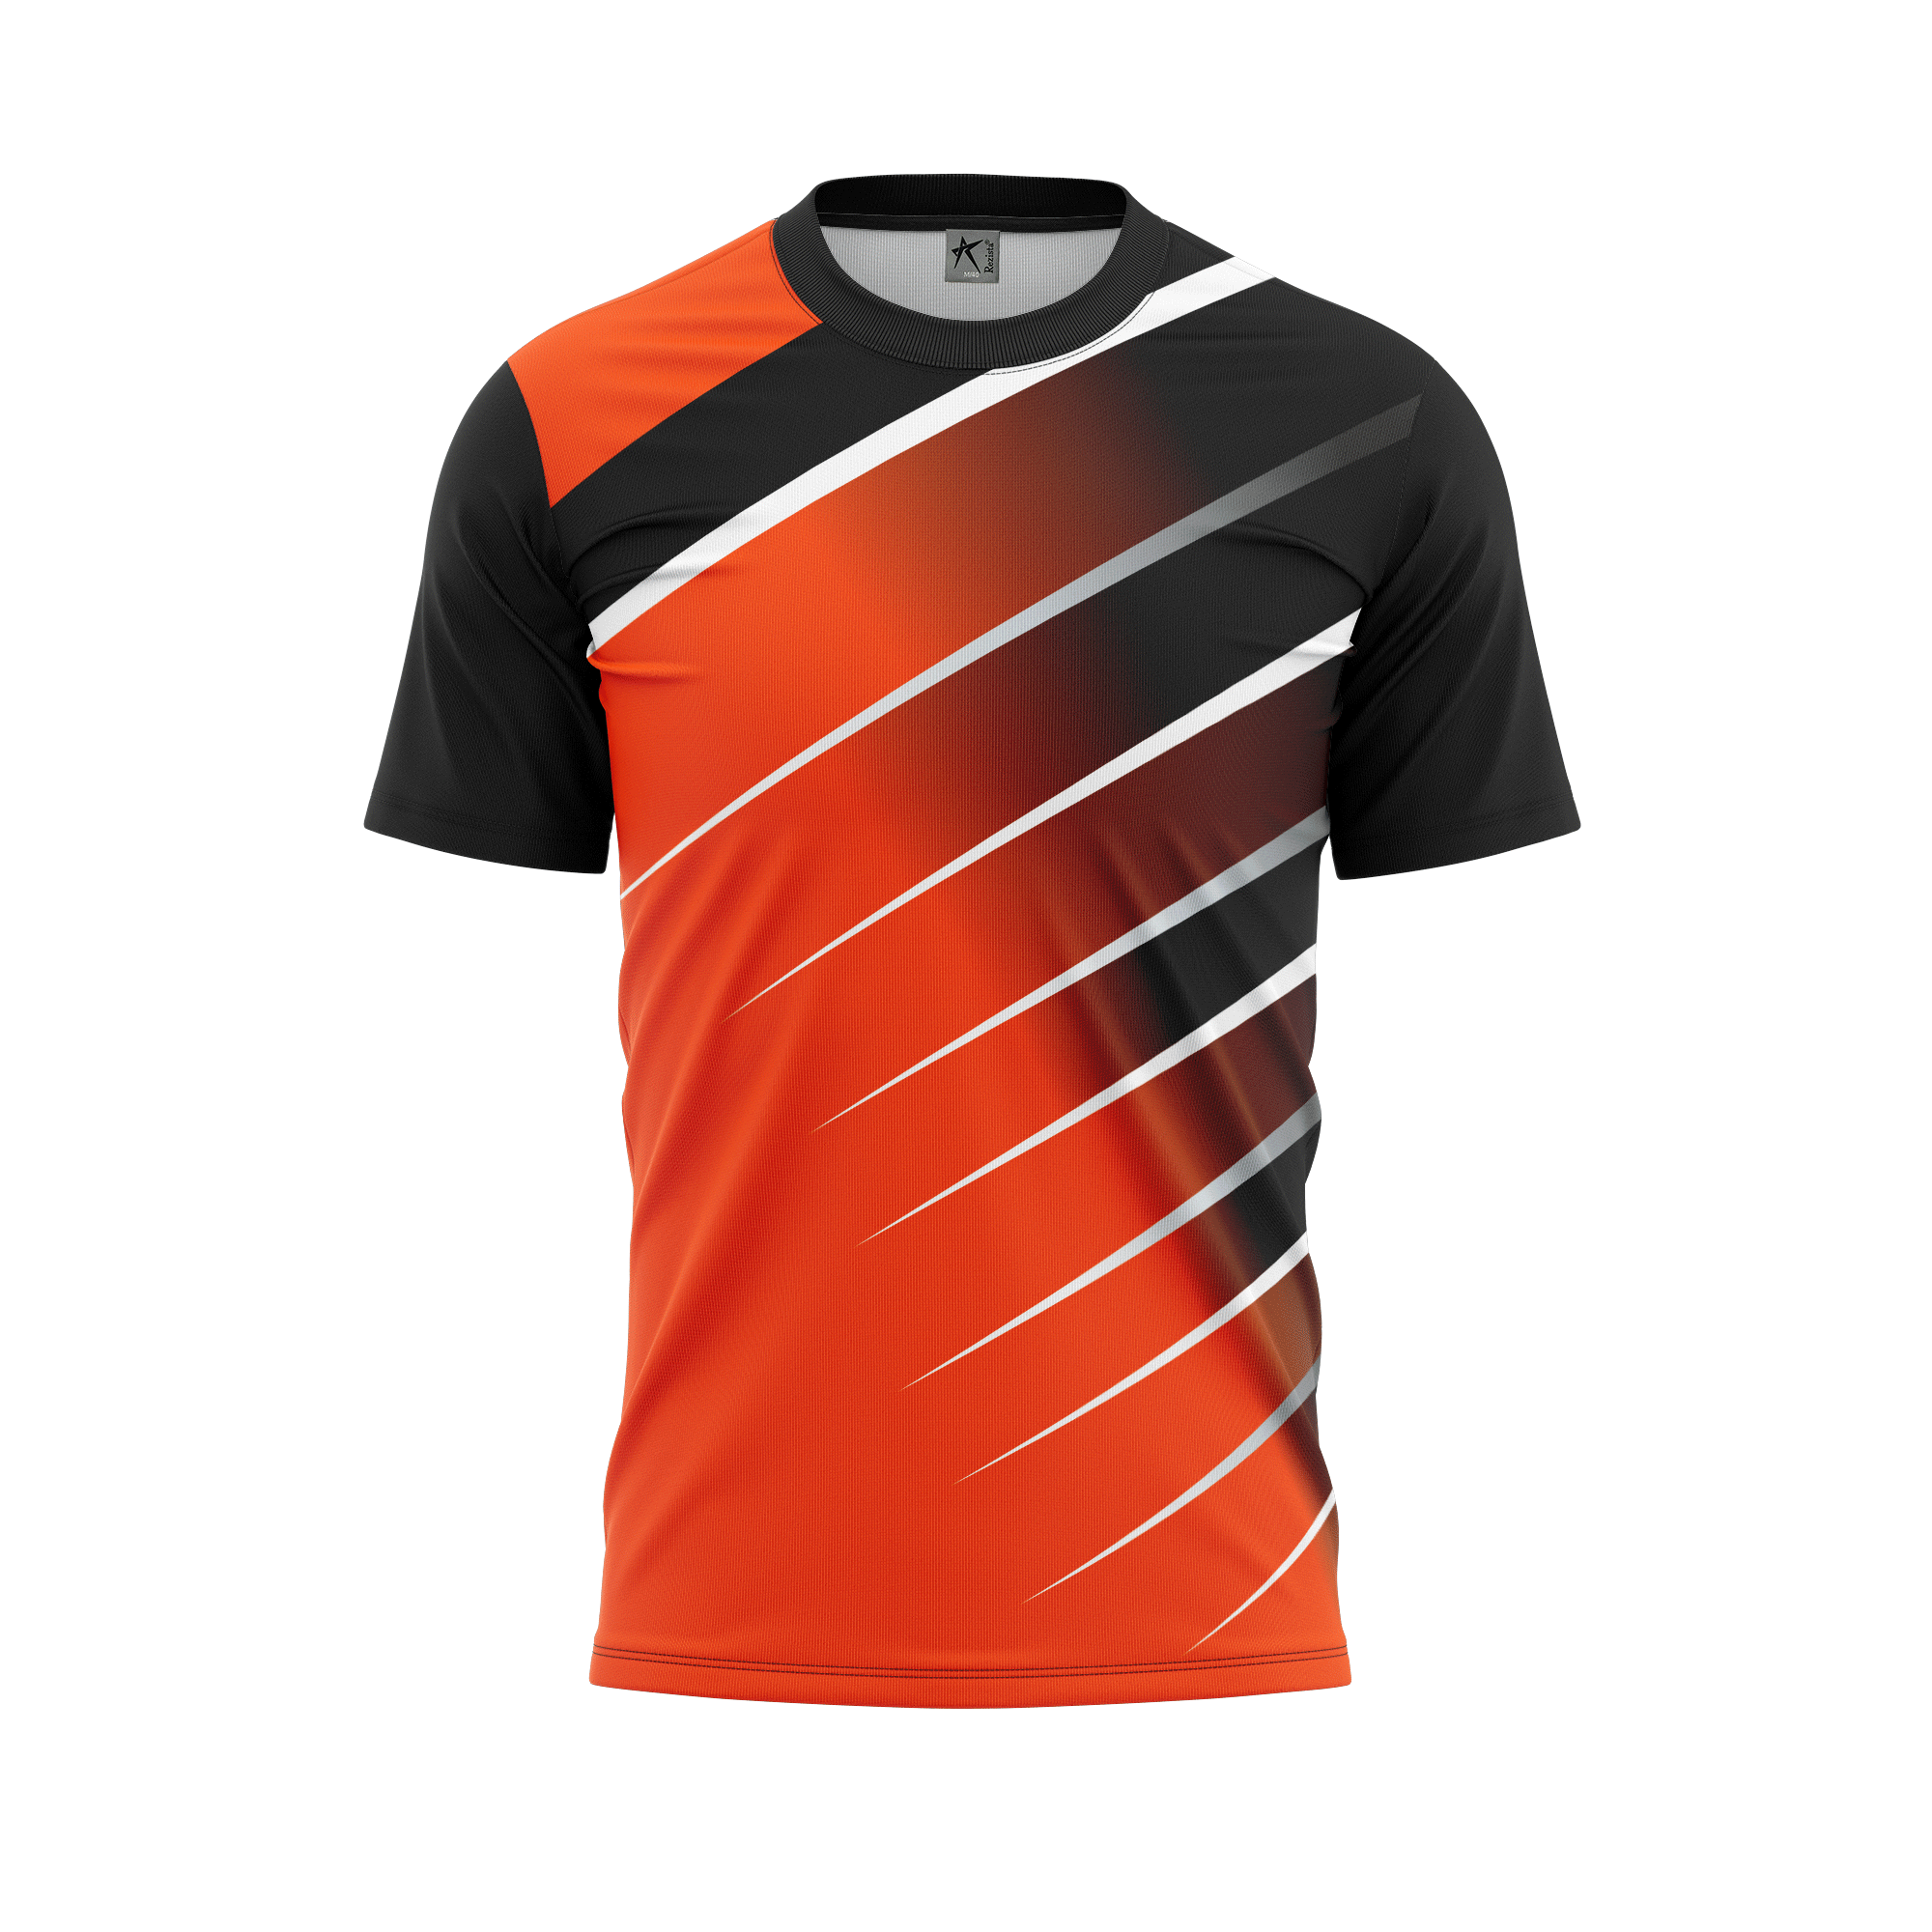 Rezista Customized Jersey - Sub Design-Orange-12 | Customized T-shirts ...